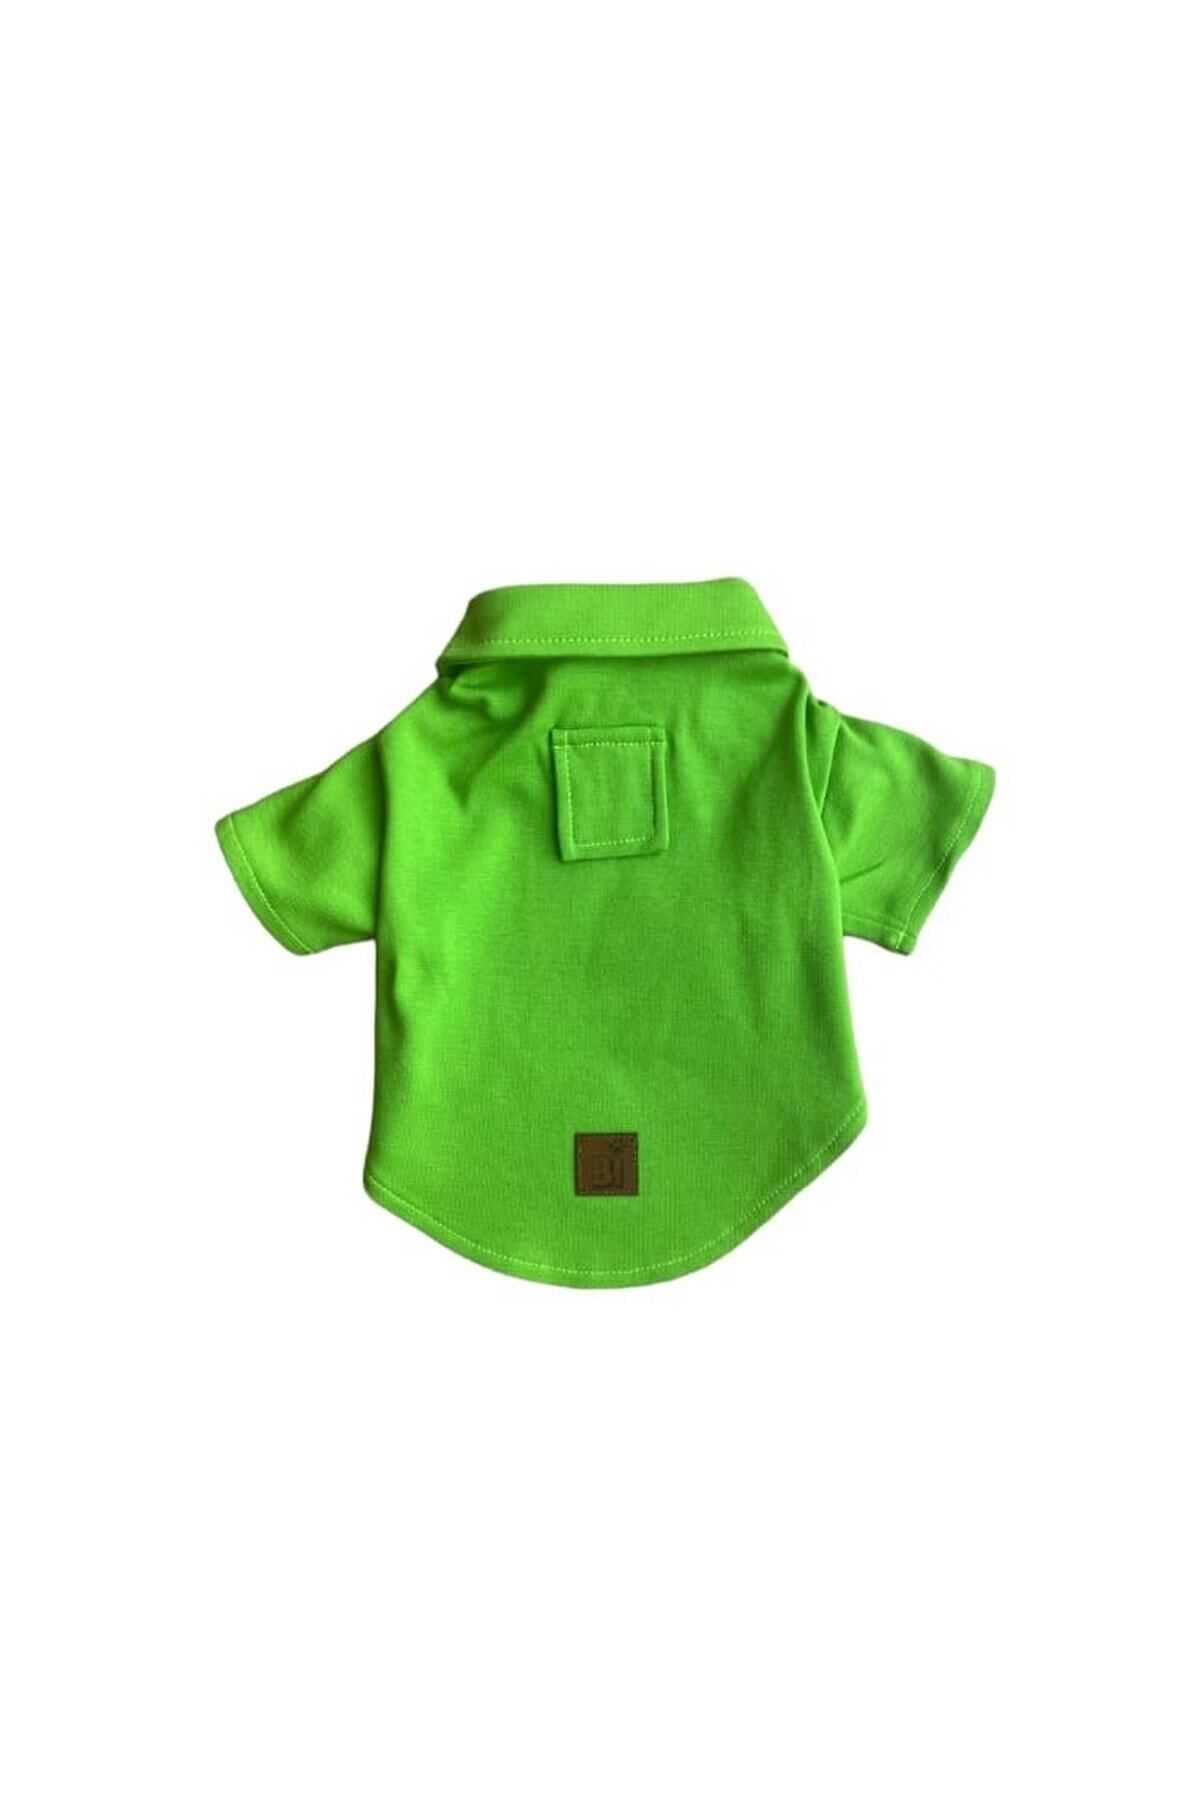 Bi Dolap Ponçik Fıstık Yeşil Rengi Yumuşak Dokulu Lacoste Kumaş Kedi Köpek Kıyafeti & Tişörtü